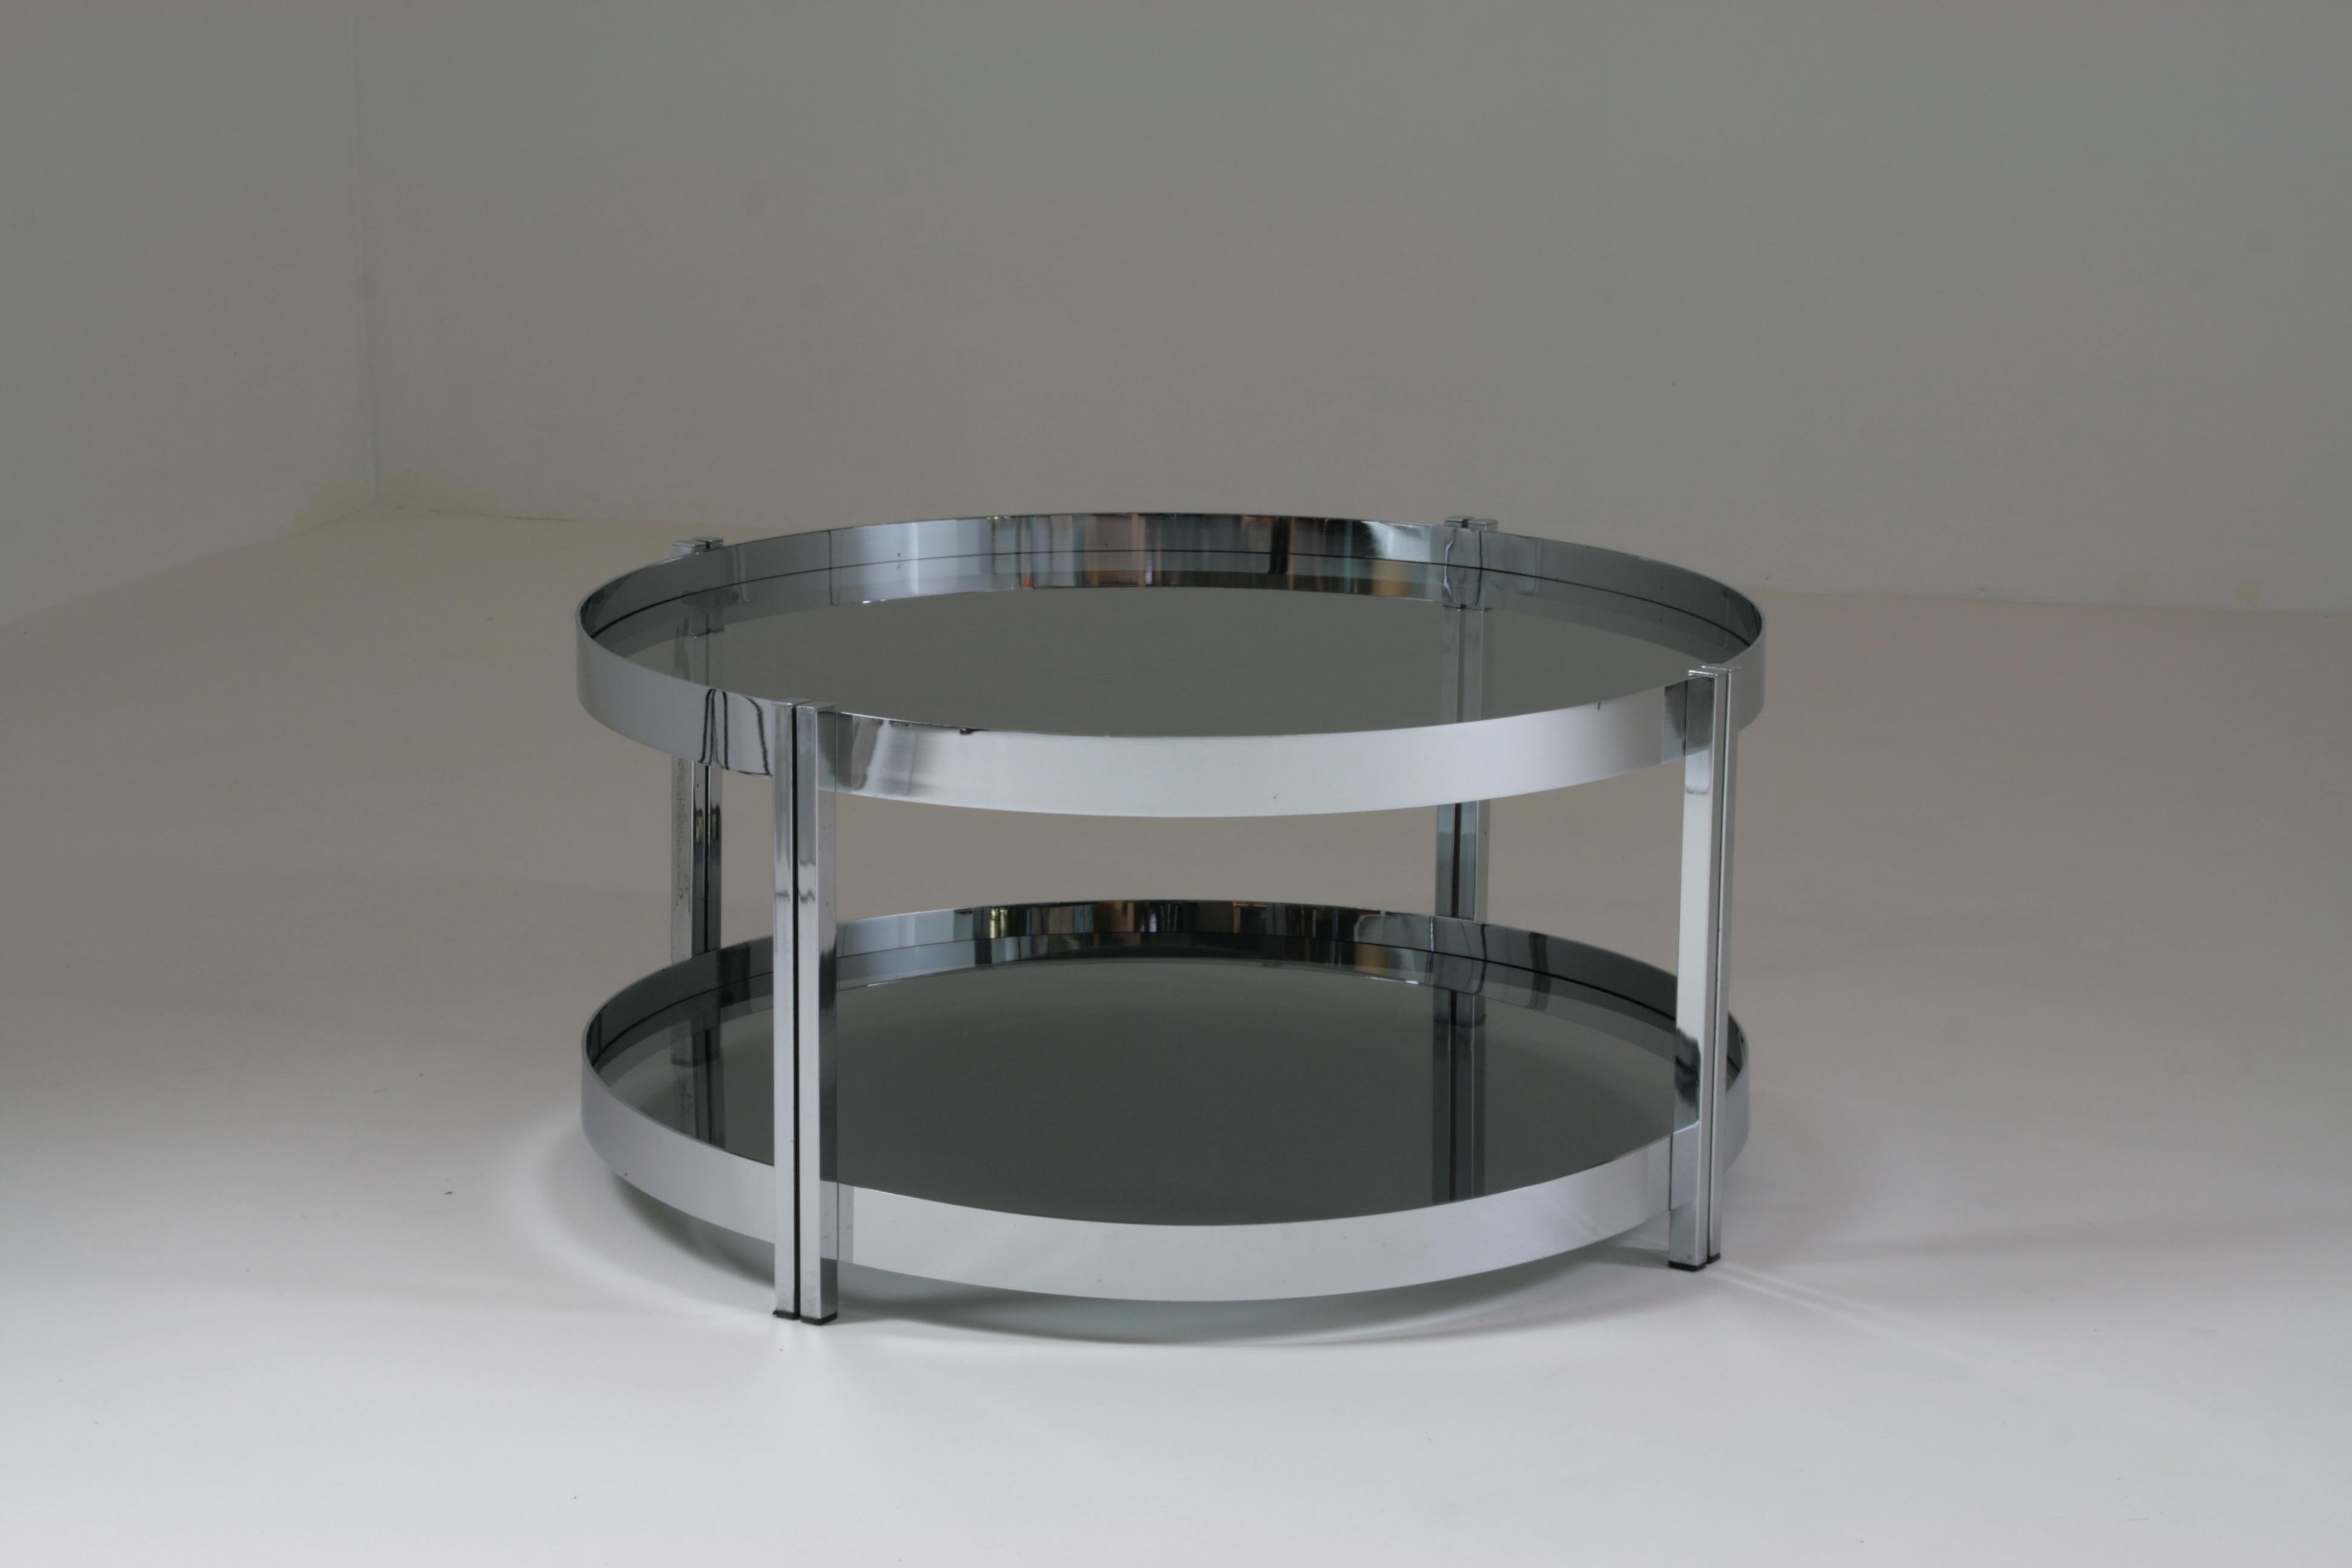 Table basse ronde en métal chromé fabriquée en France dans les années 1970. Les deux plateaux en verre fumé sont amovibles et sont très pratiques au quotidien pour le rangement ou l'insertion d'objets décoratifs. Quelques traces d'utilisation sur